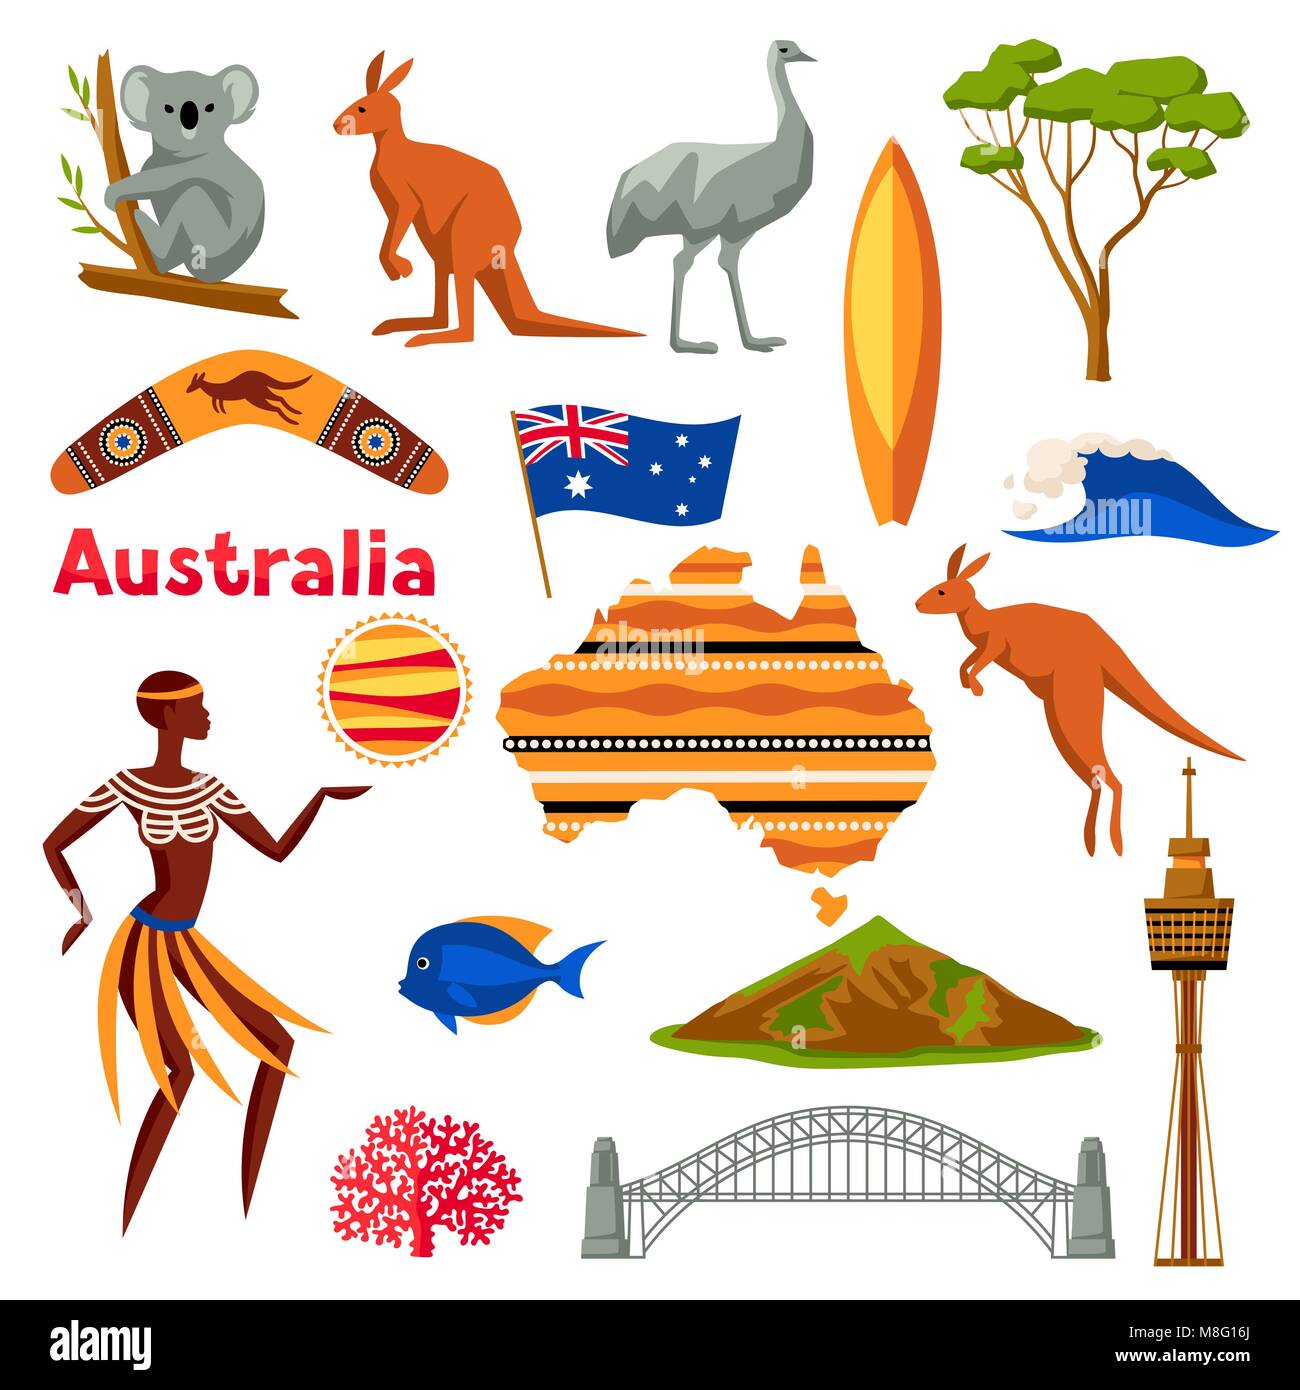 Australien Symbole gesetzt. Australische traditionelle Symbole und Objekte Stock Vektor